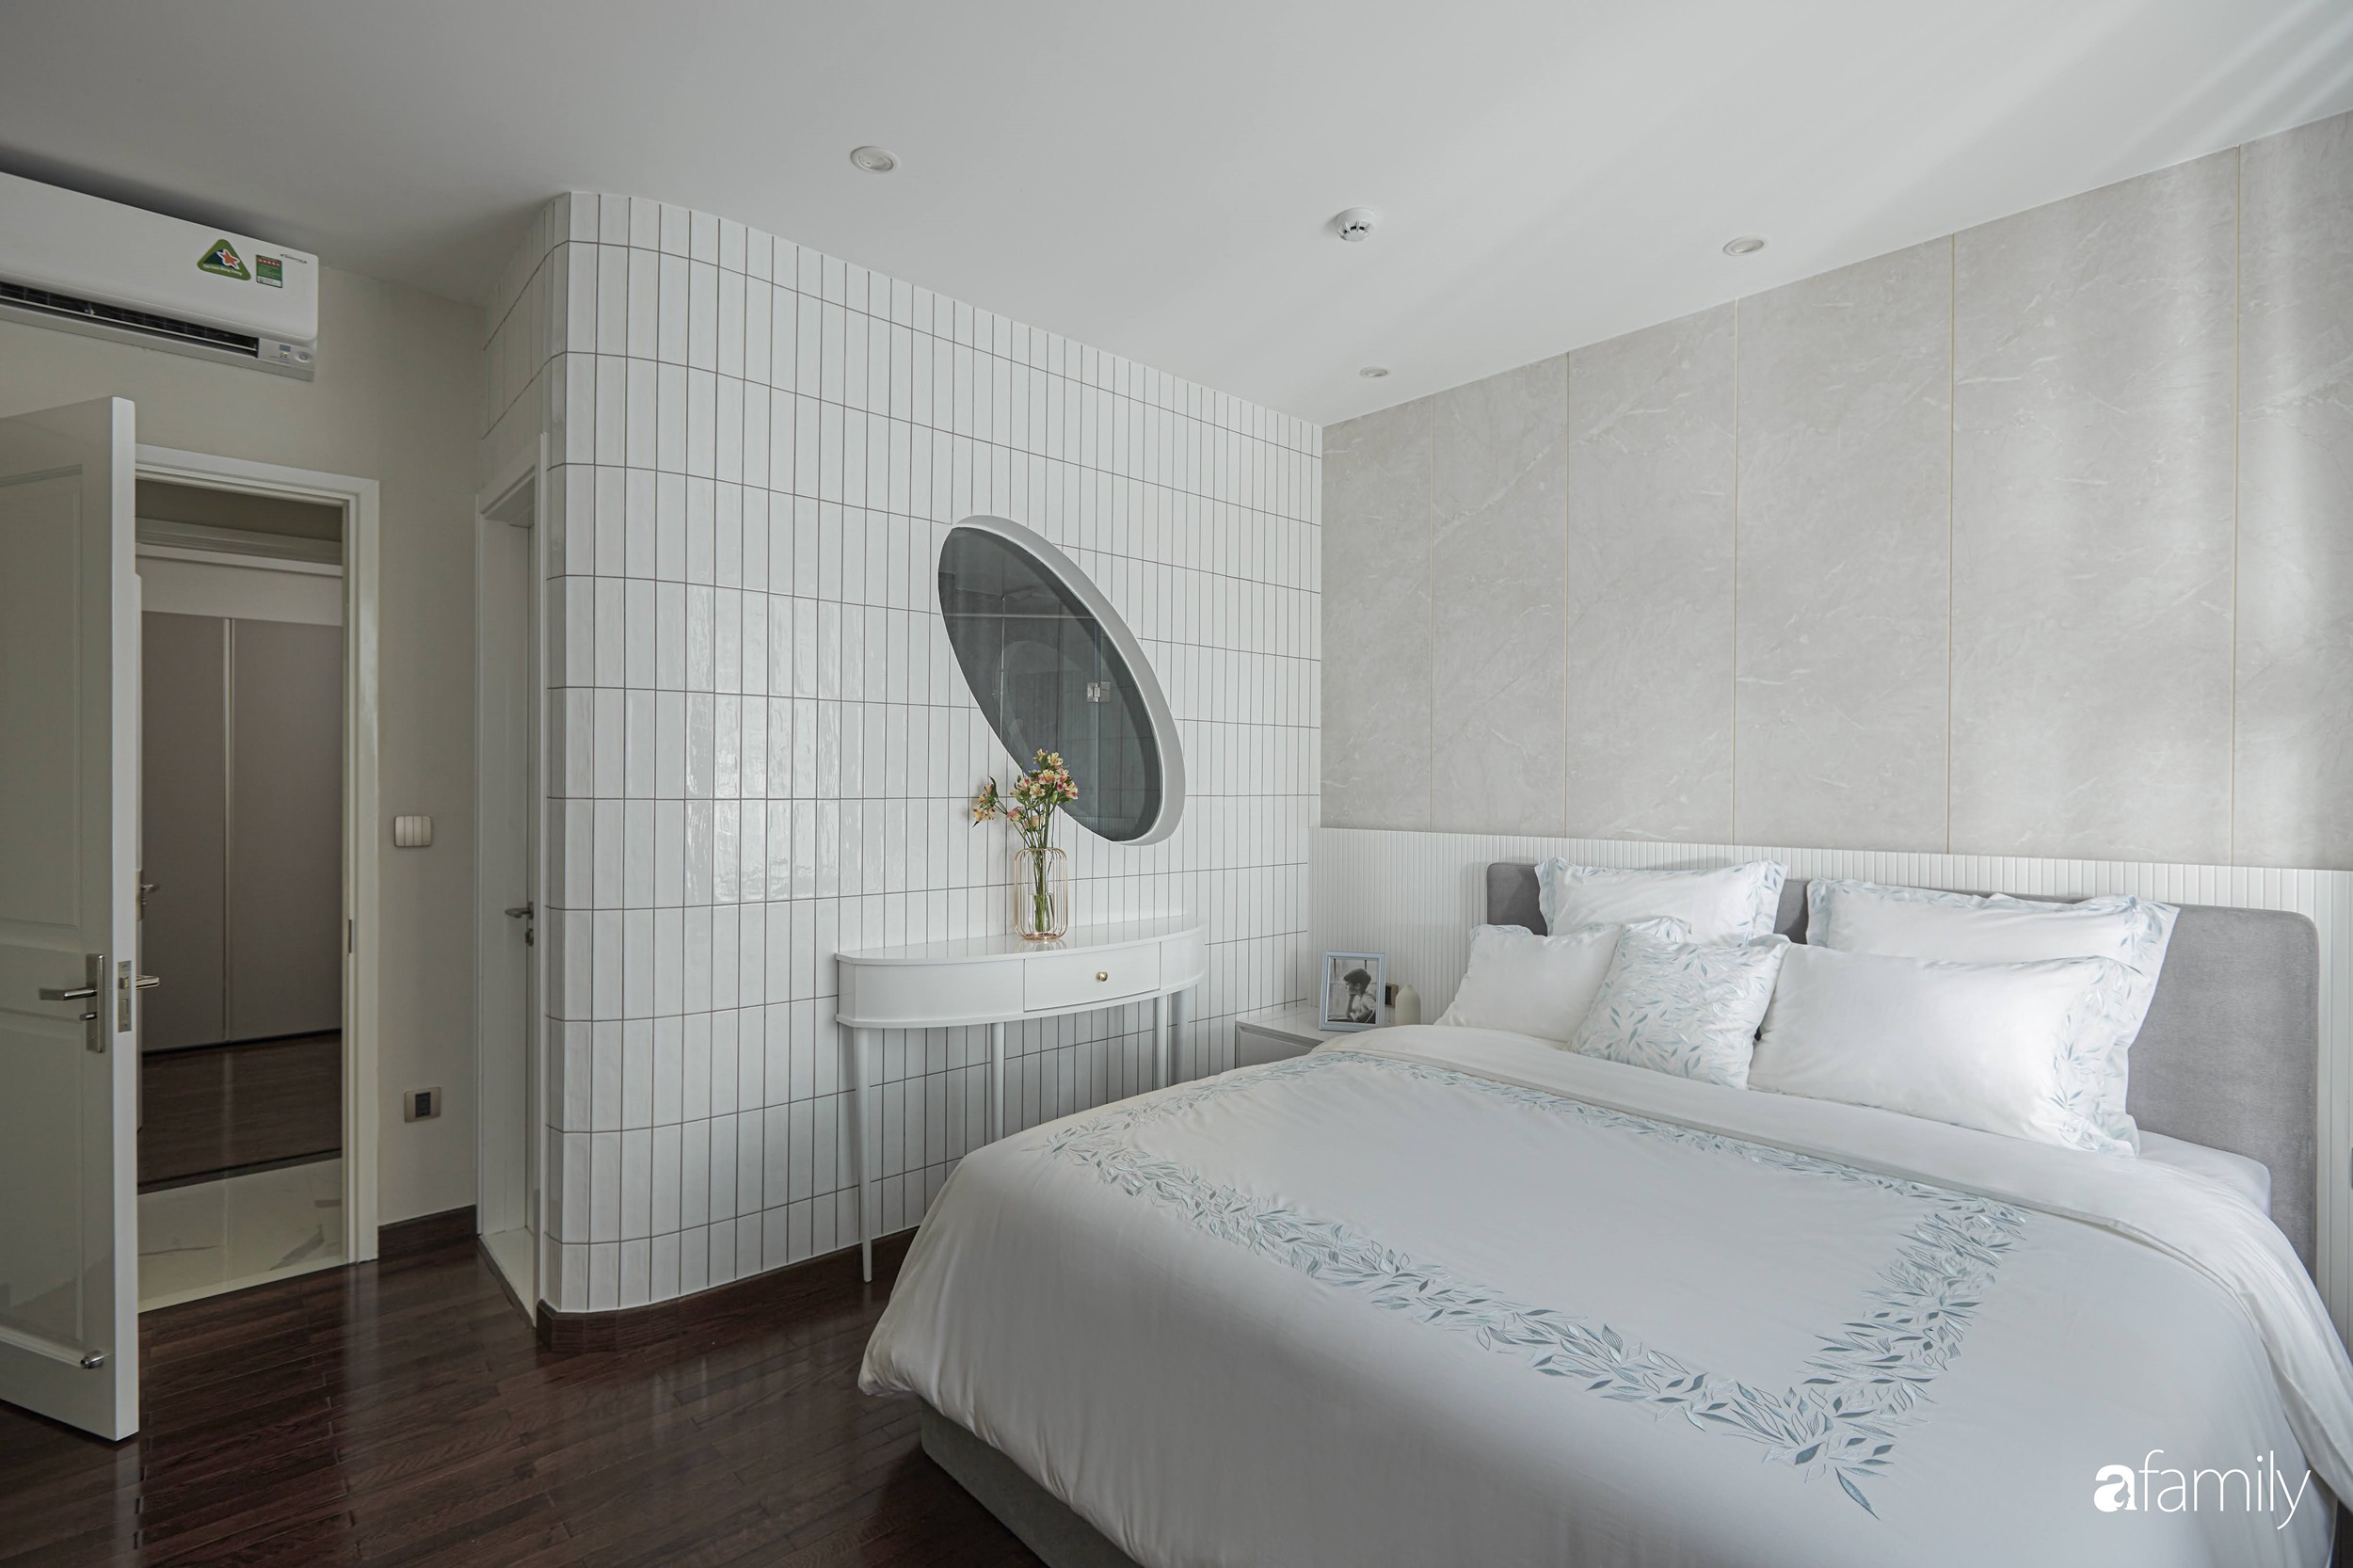 Căn hộ 85m² đẹp sang chảnh với nội thất cao cấp như khách sạn 5 sao ở TP HCM - Ảnh 9.